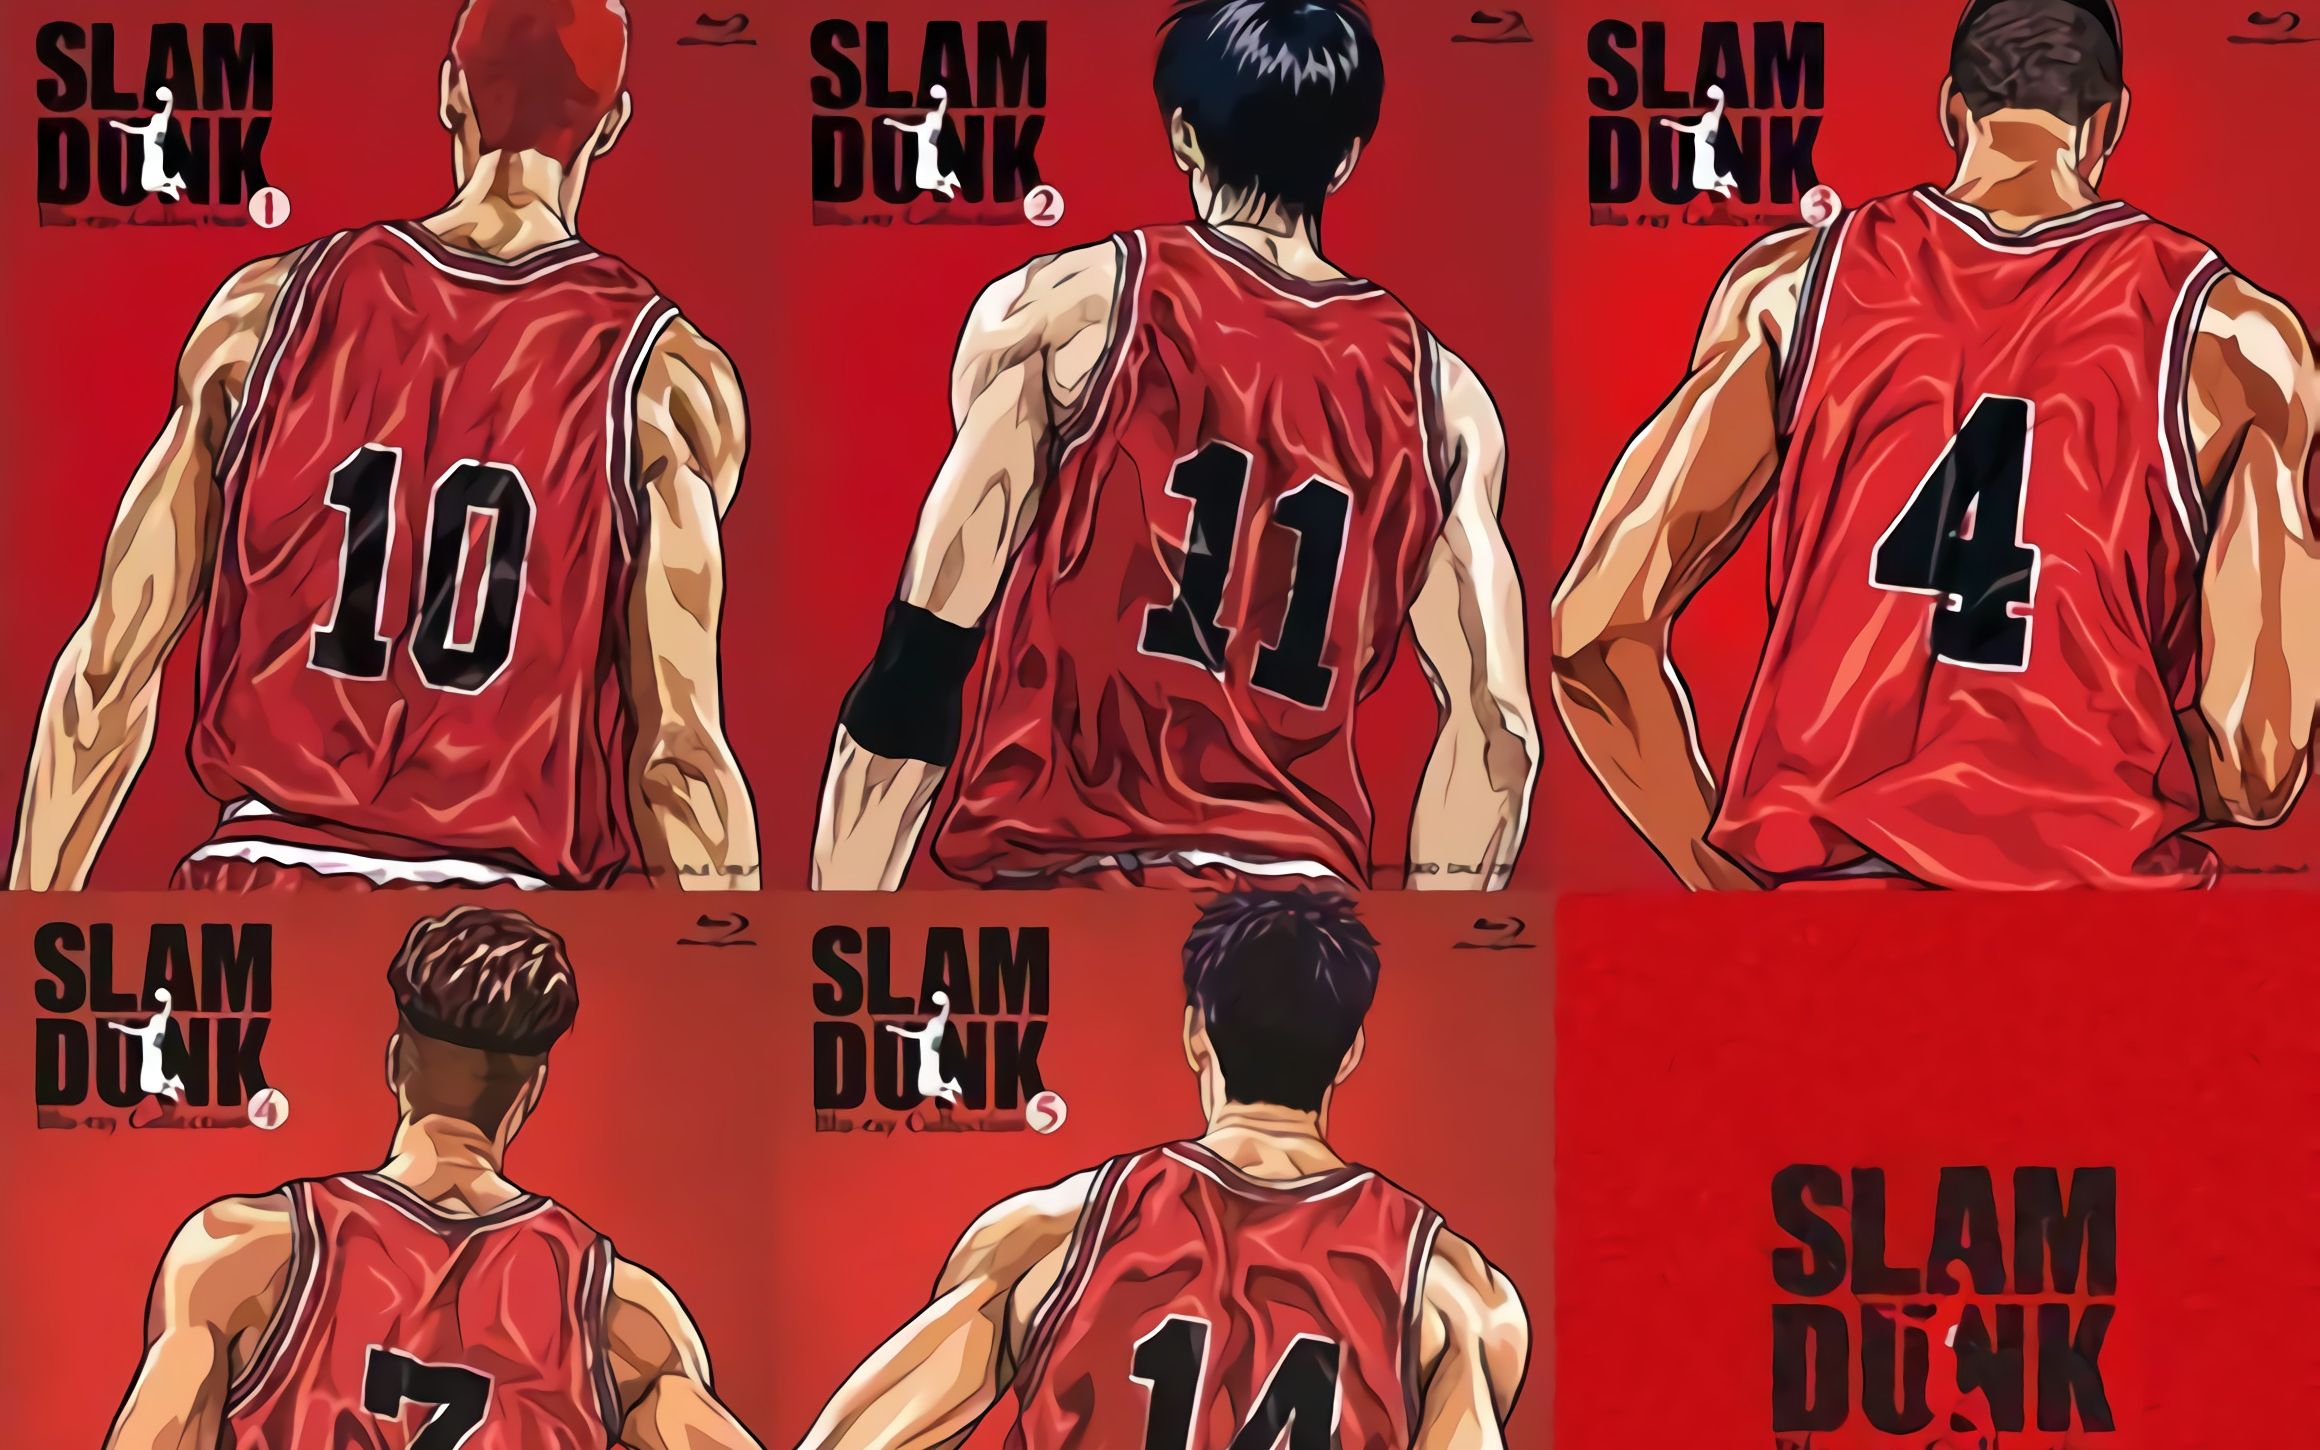 灌篮高手(slam dunk)篮球干货合集(上) 动作,运球,突破,防守,投篮